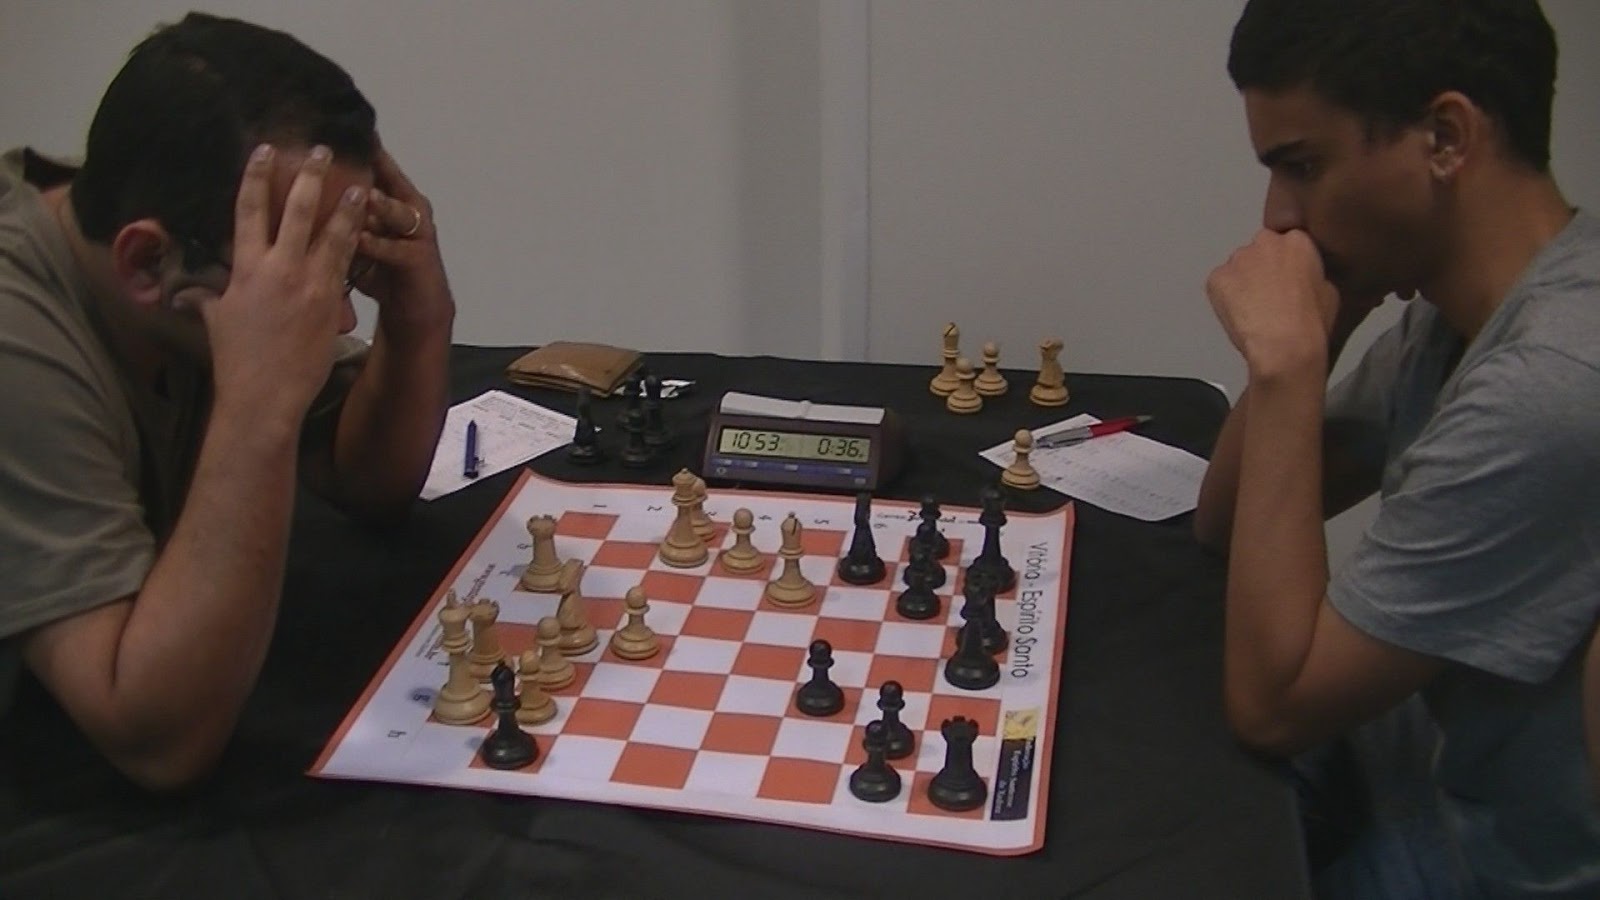 The chess games of Yago De Moura Santiago